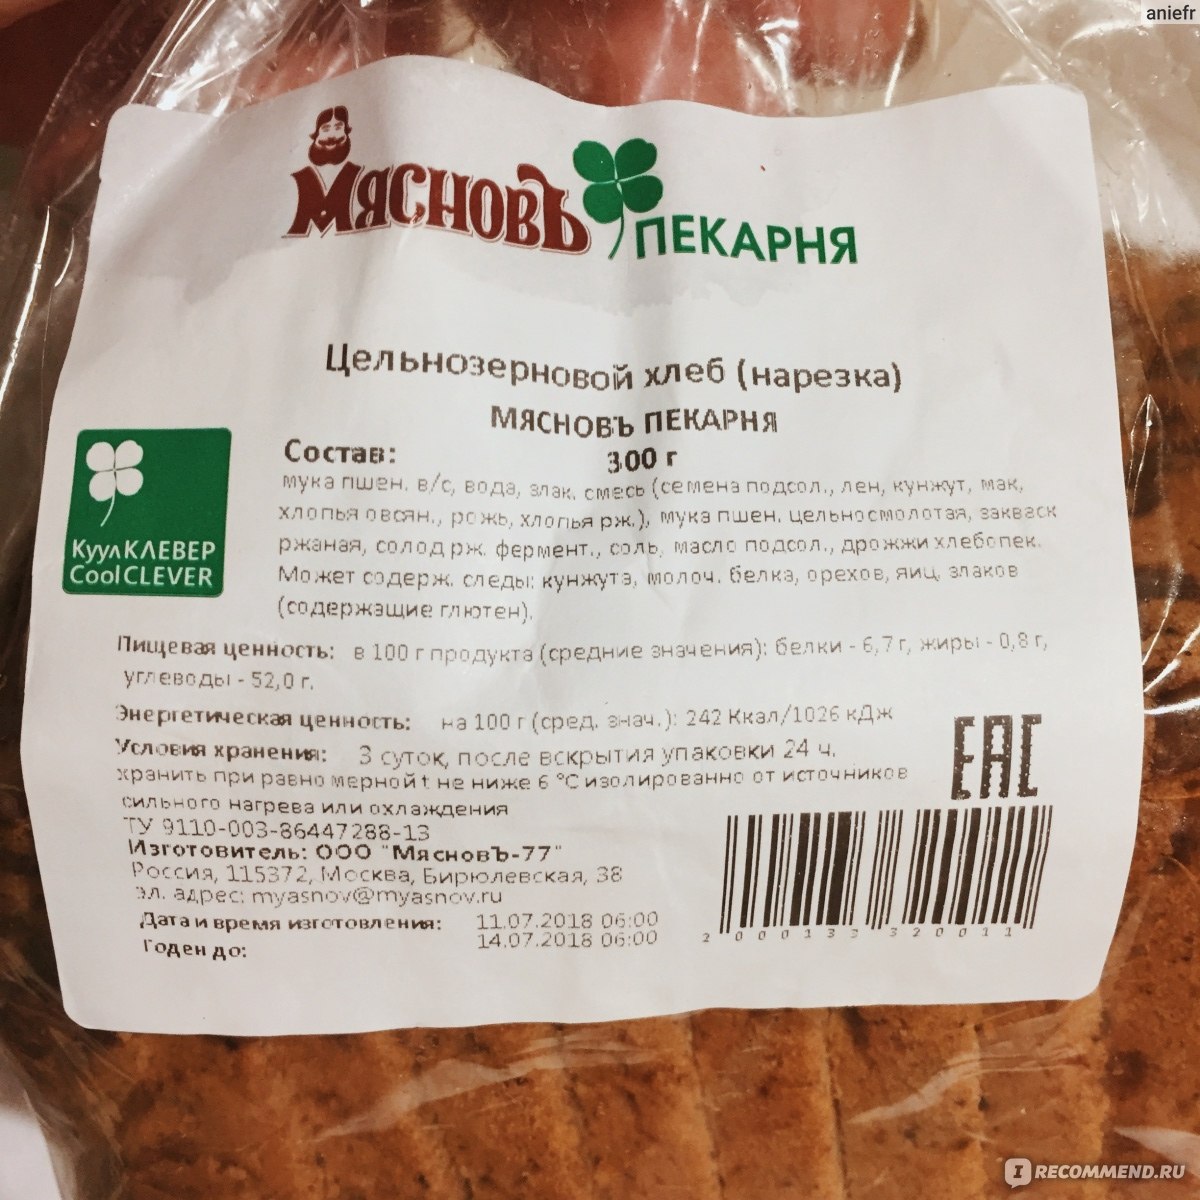 Какой хлеб цельнозерновой название. Хлеб из цельнозерновой муки в магазинах. Цельнозерновой хлеб состав. Название хлеба из цельнозерновой муки. Марки хлеба из цельнозерновой муки.